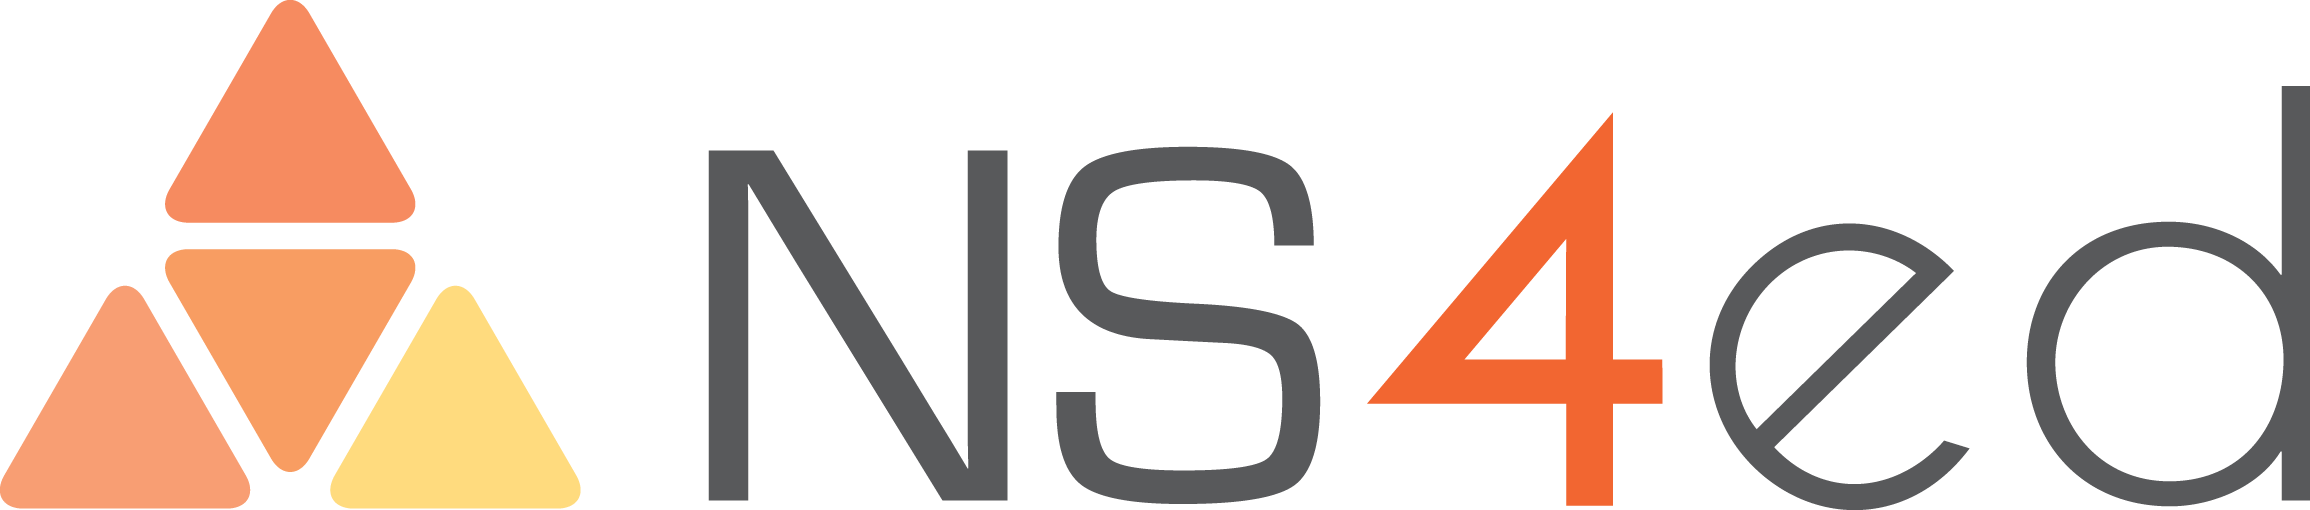 ns4ed_logo_002.png